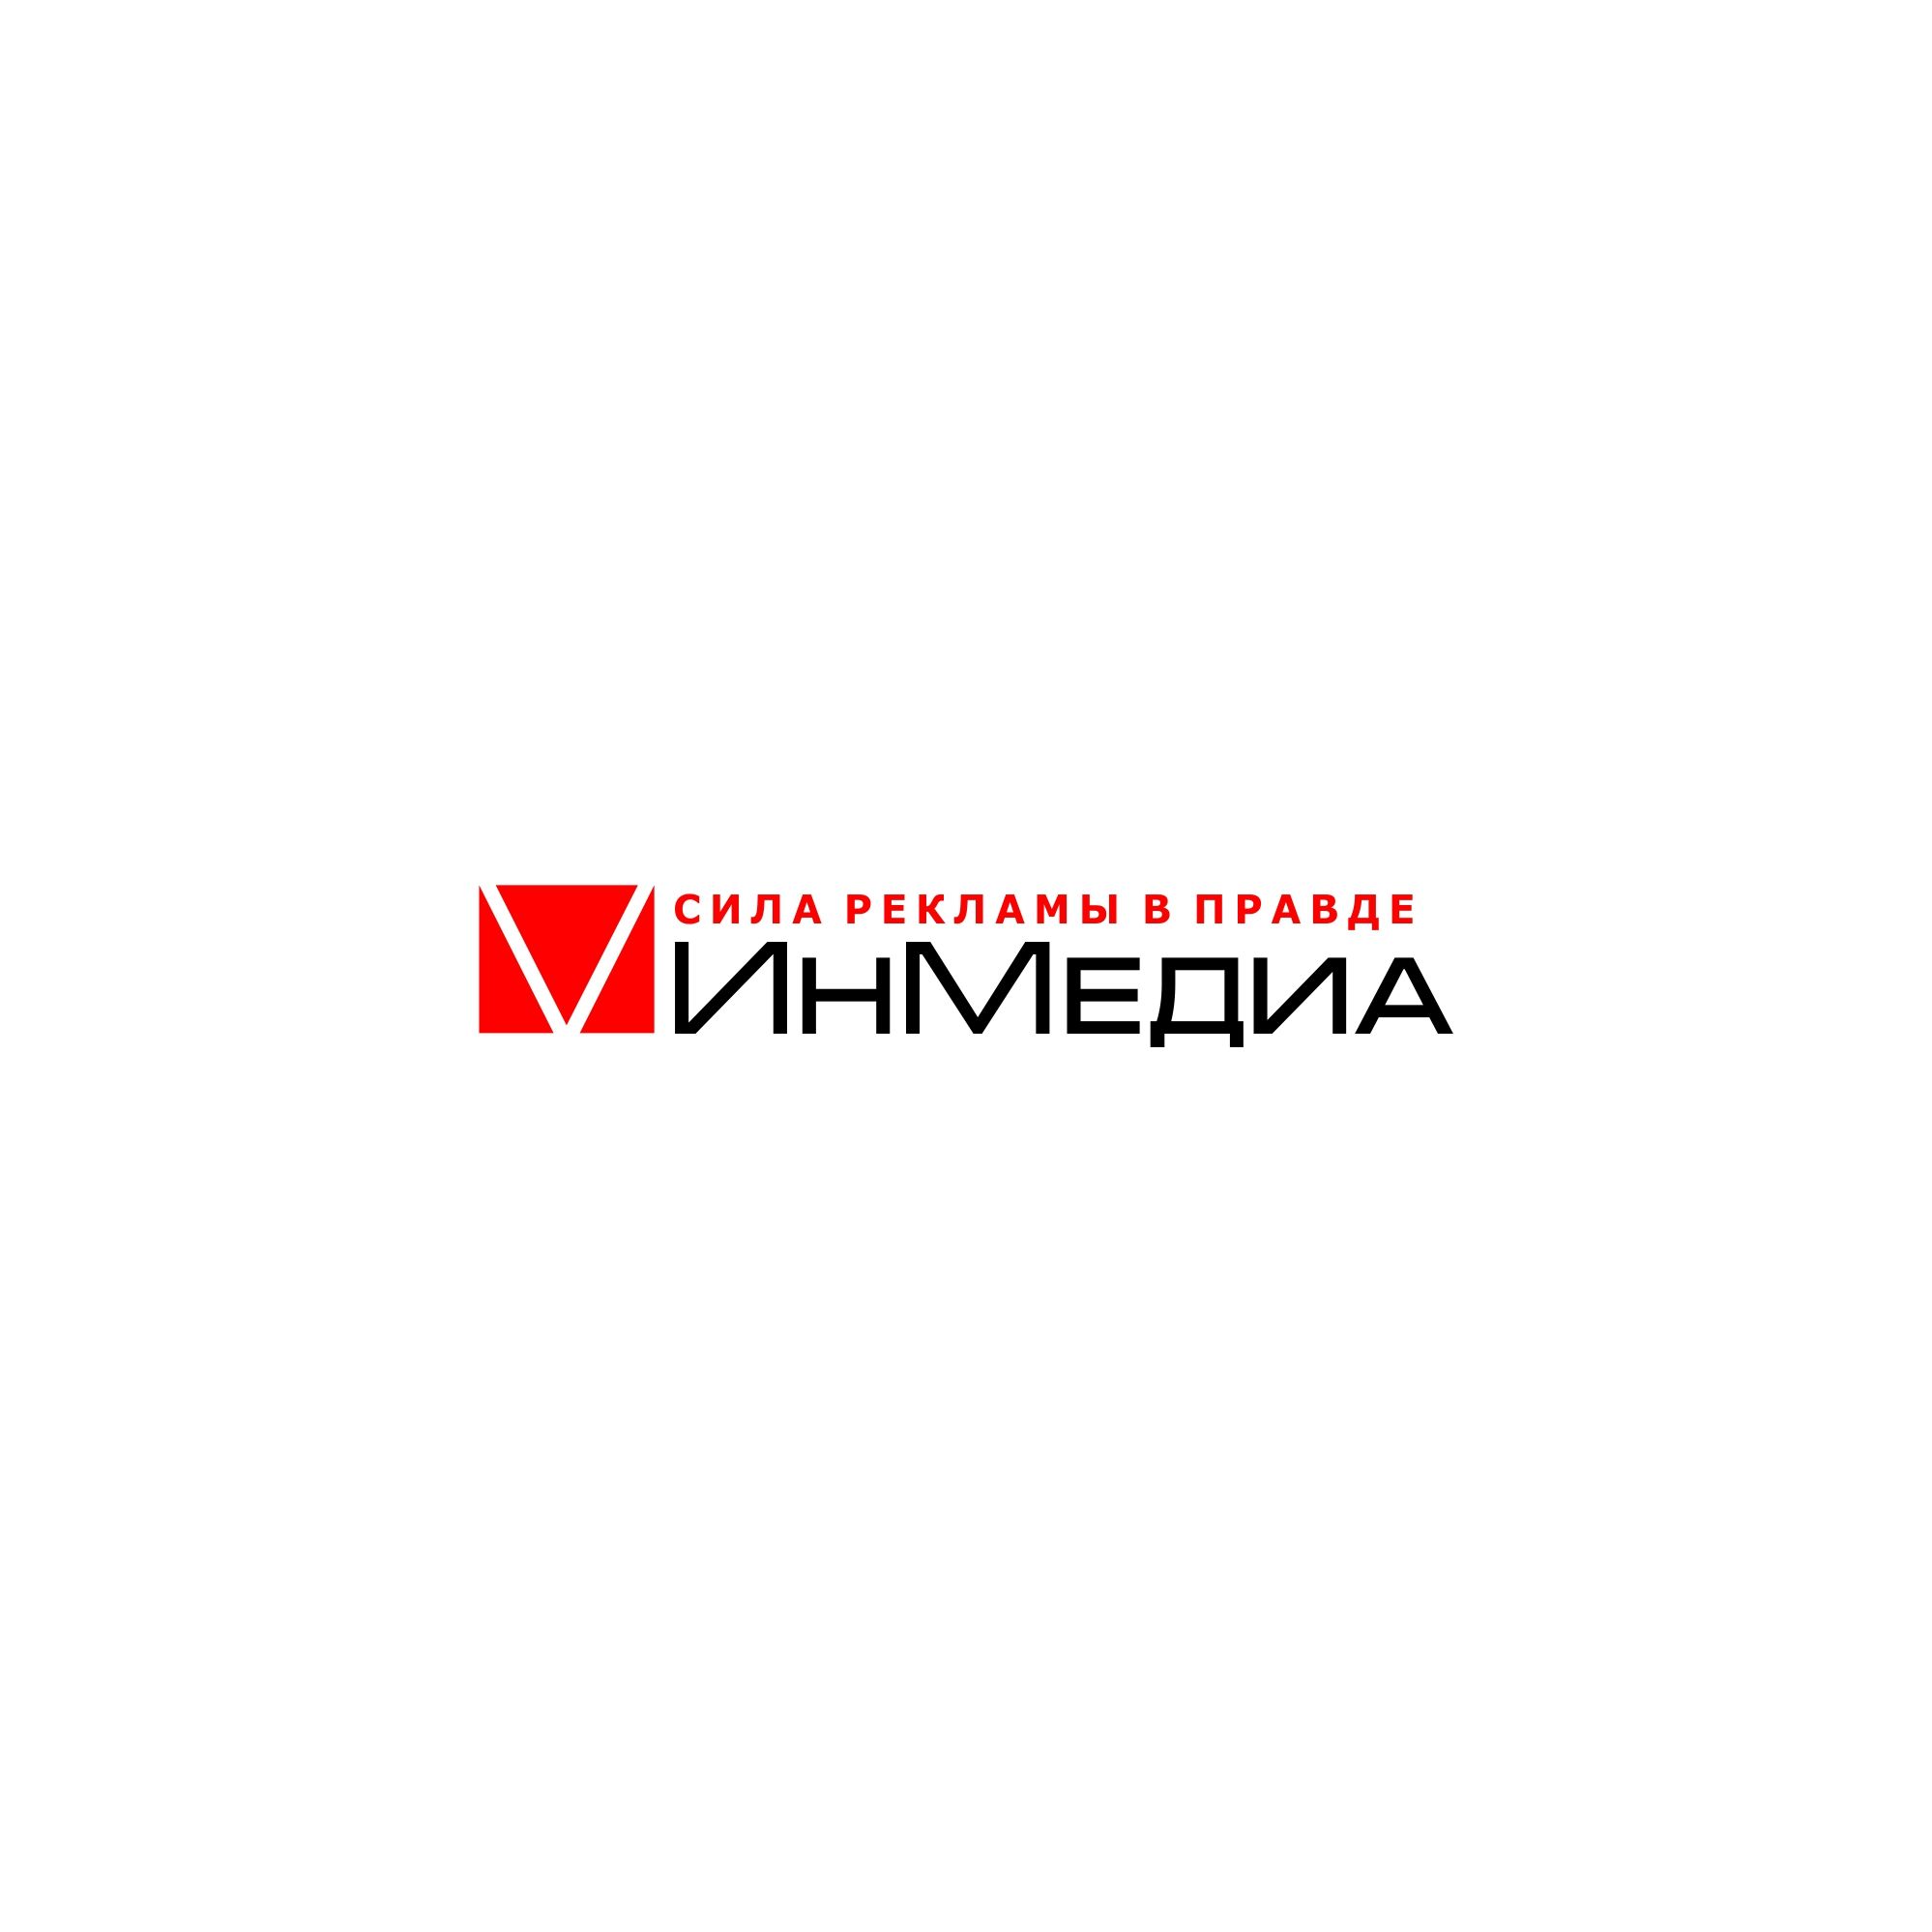 Логотип для ИнМедиа - дизайнер serz4868